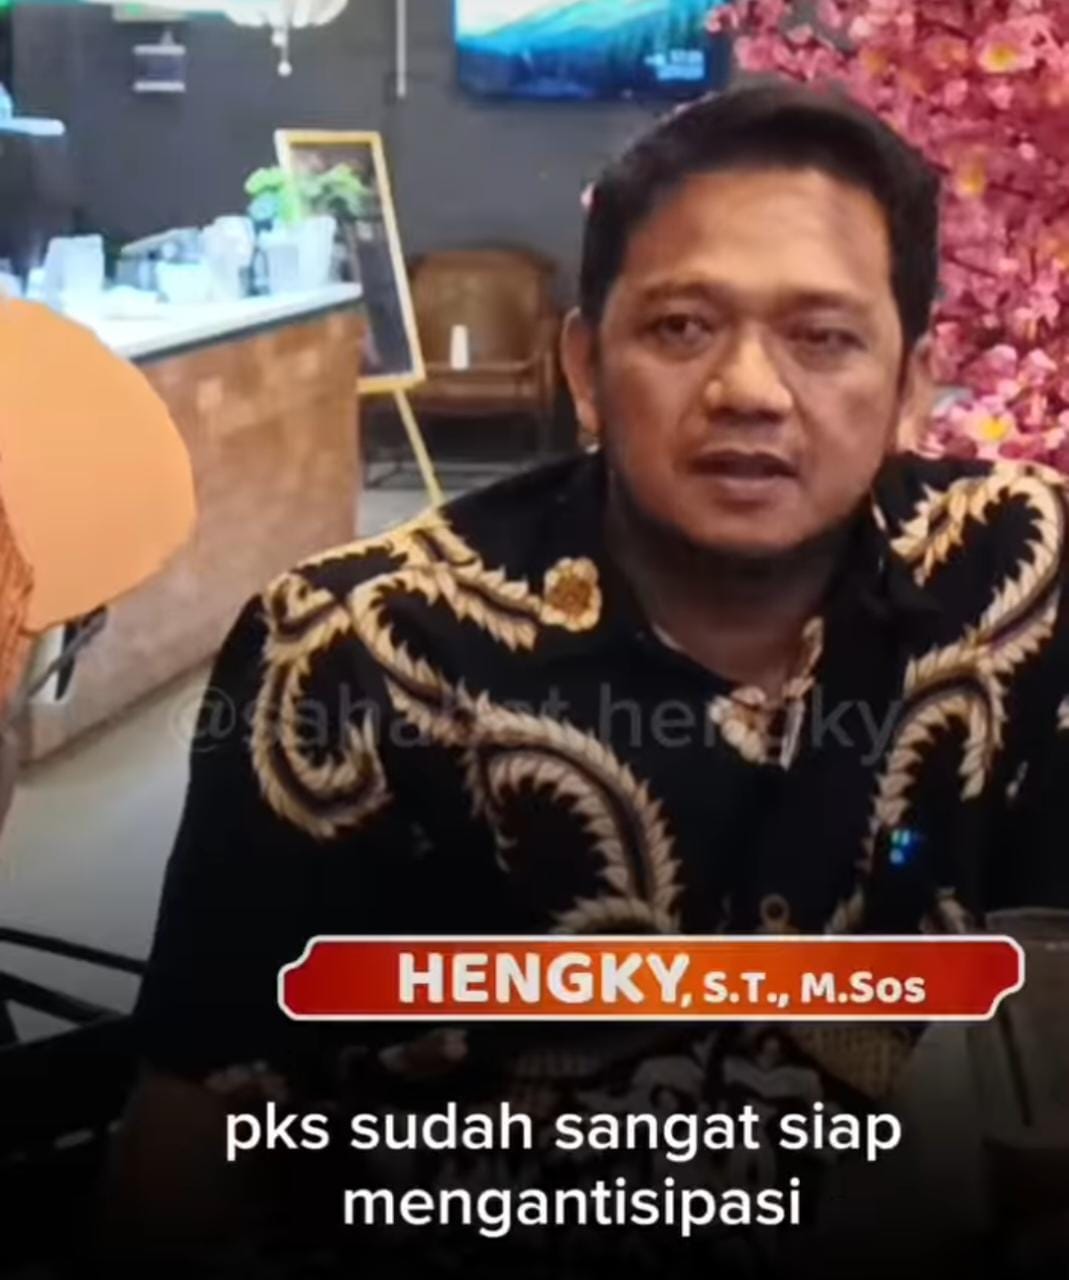 Fraksi PKS Depok, Anggota DPRD Depok Hengky Percaya PKS Siap Menghadapi Kaesang Sebagai Kontestan Calon Wali Kota